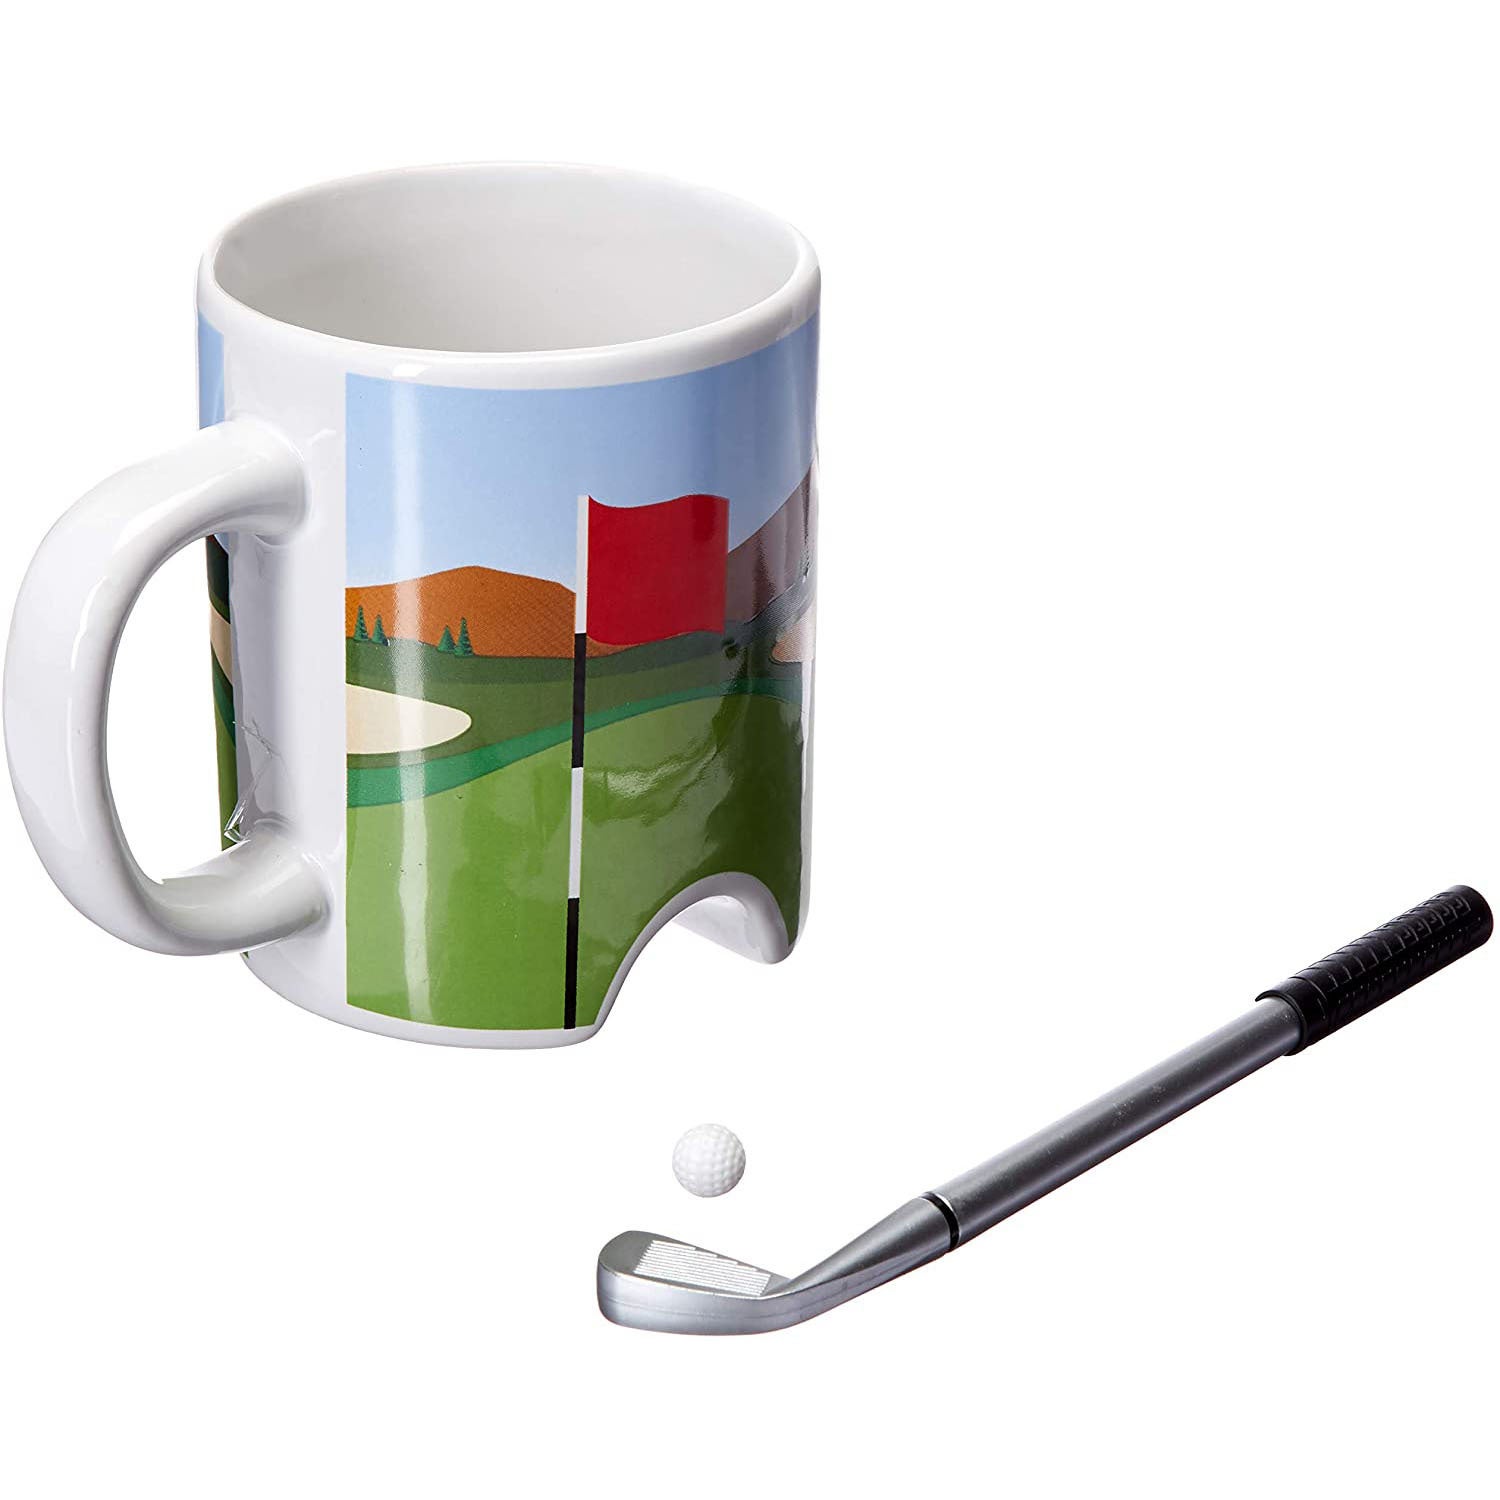 Kikkerland Putter Cup Golf Mug with Putter/Pen & Ball